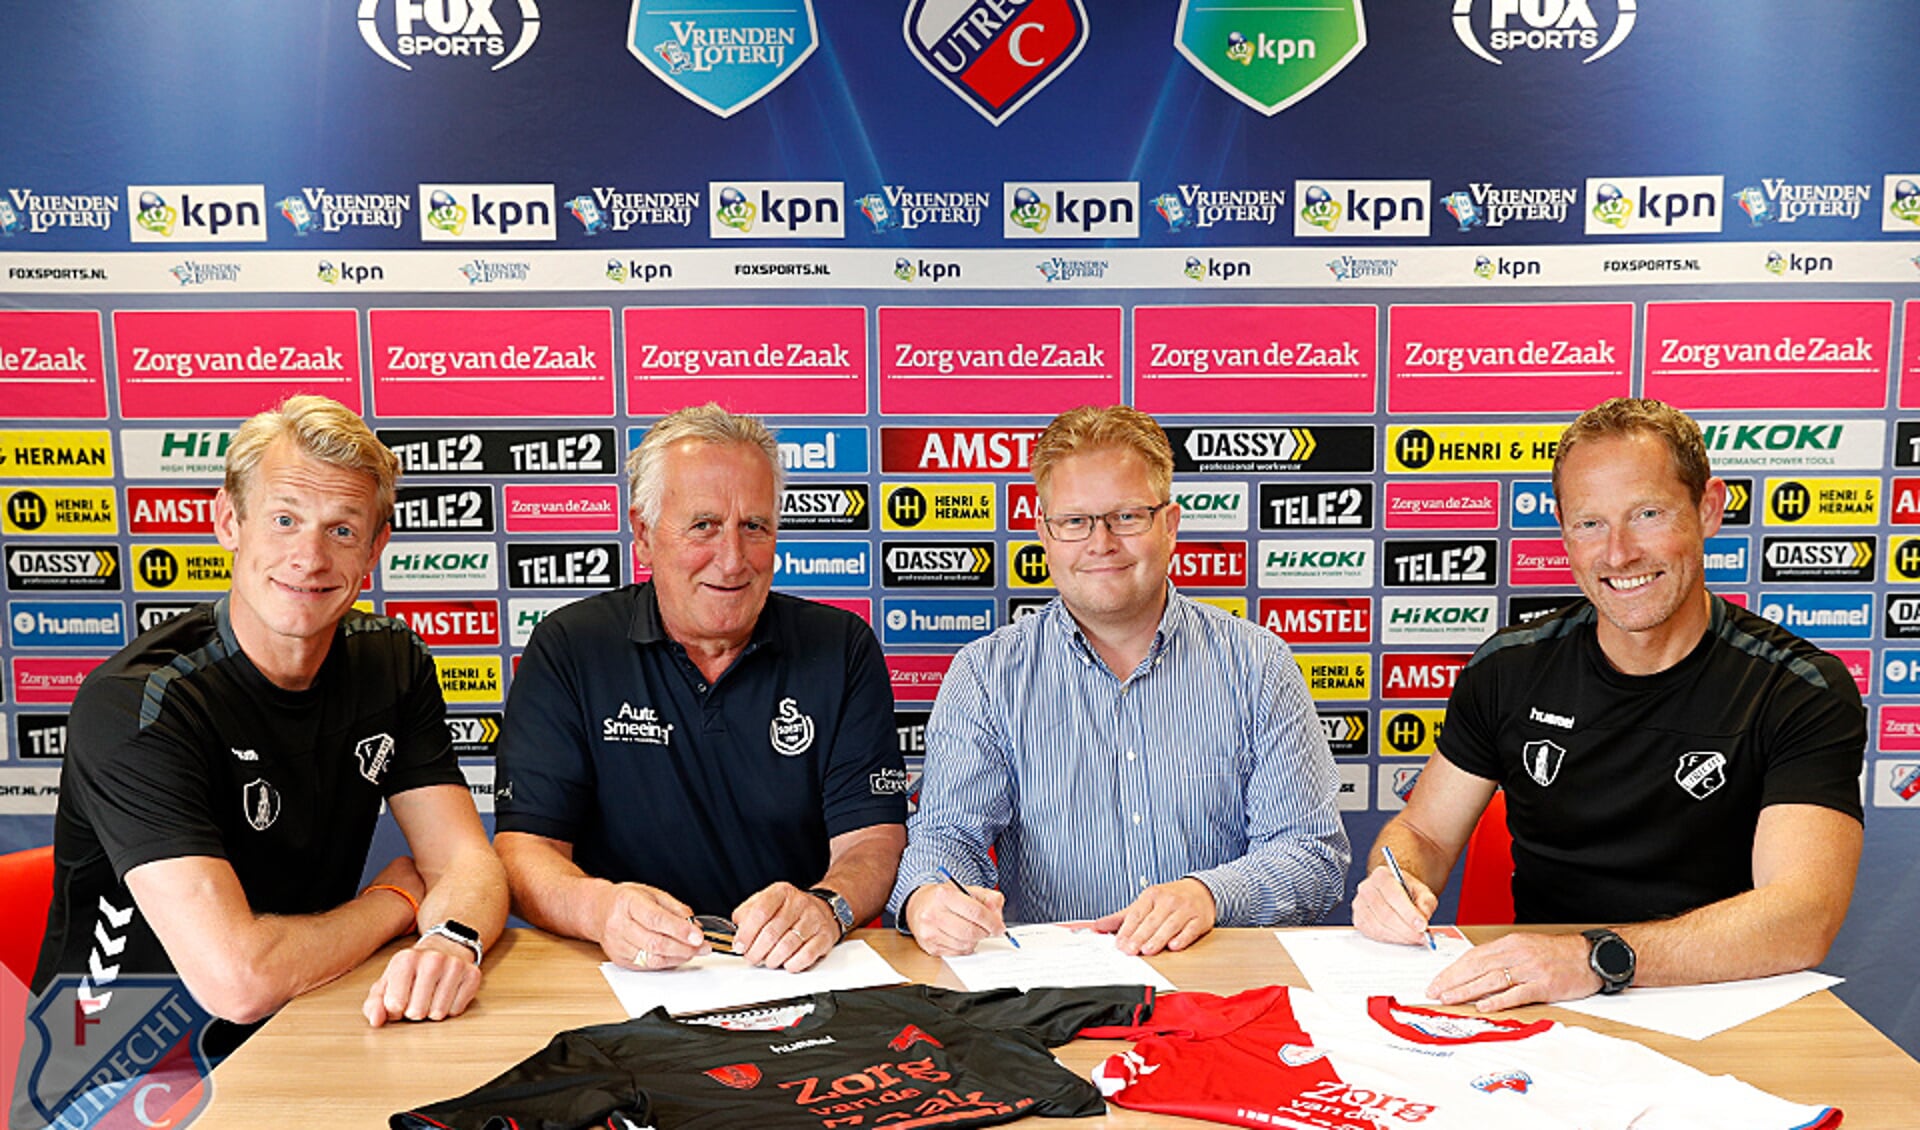 Vicevoorzitter Michiel Heijmans (tweede van rechts) en Jeugdvoorzitter Leo Rauch ondertekenen het STER-contract bij FC Utrecht. Links Bas van den Brink en uiterst rechts Jelle Goes van FC Utrecht.